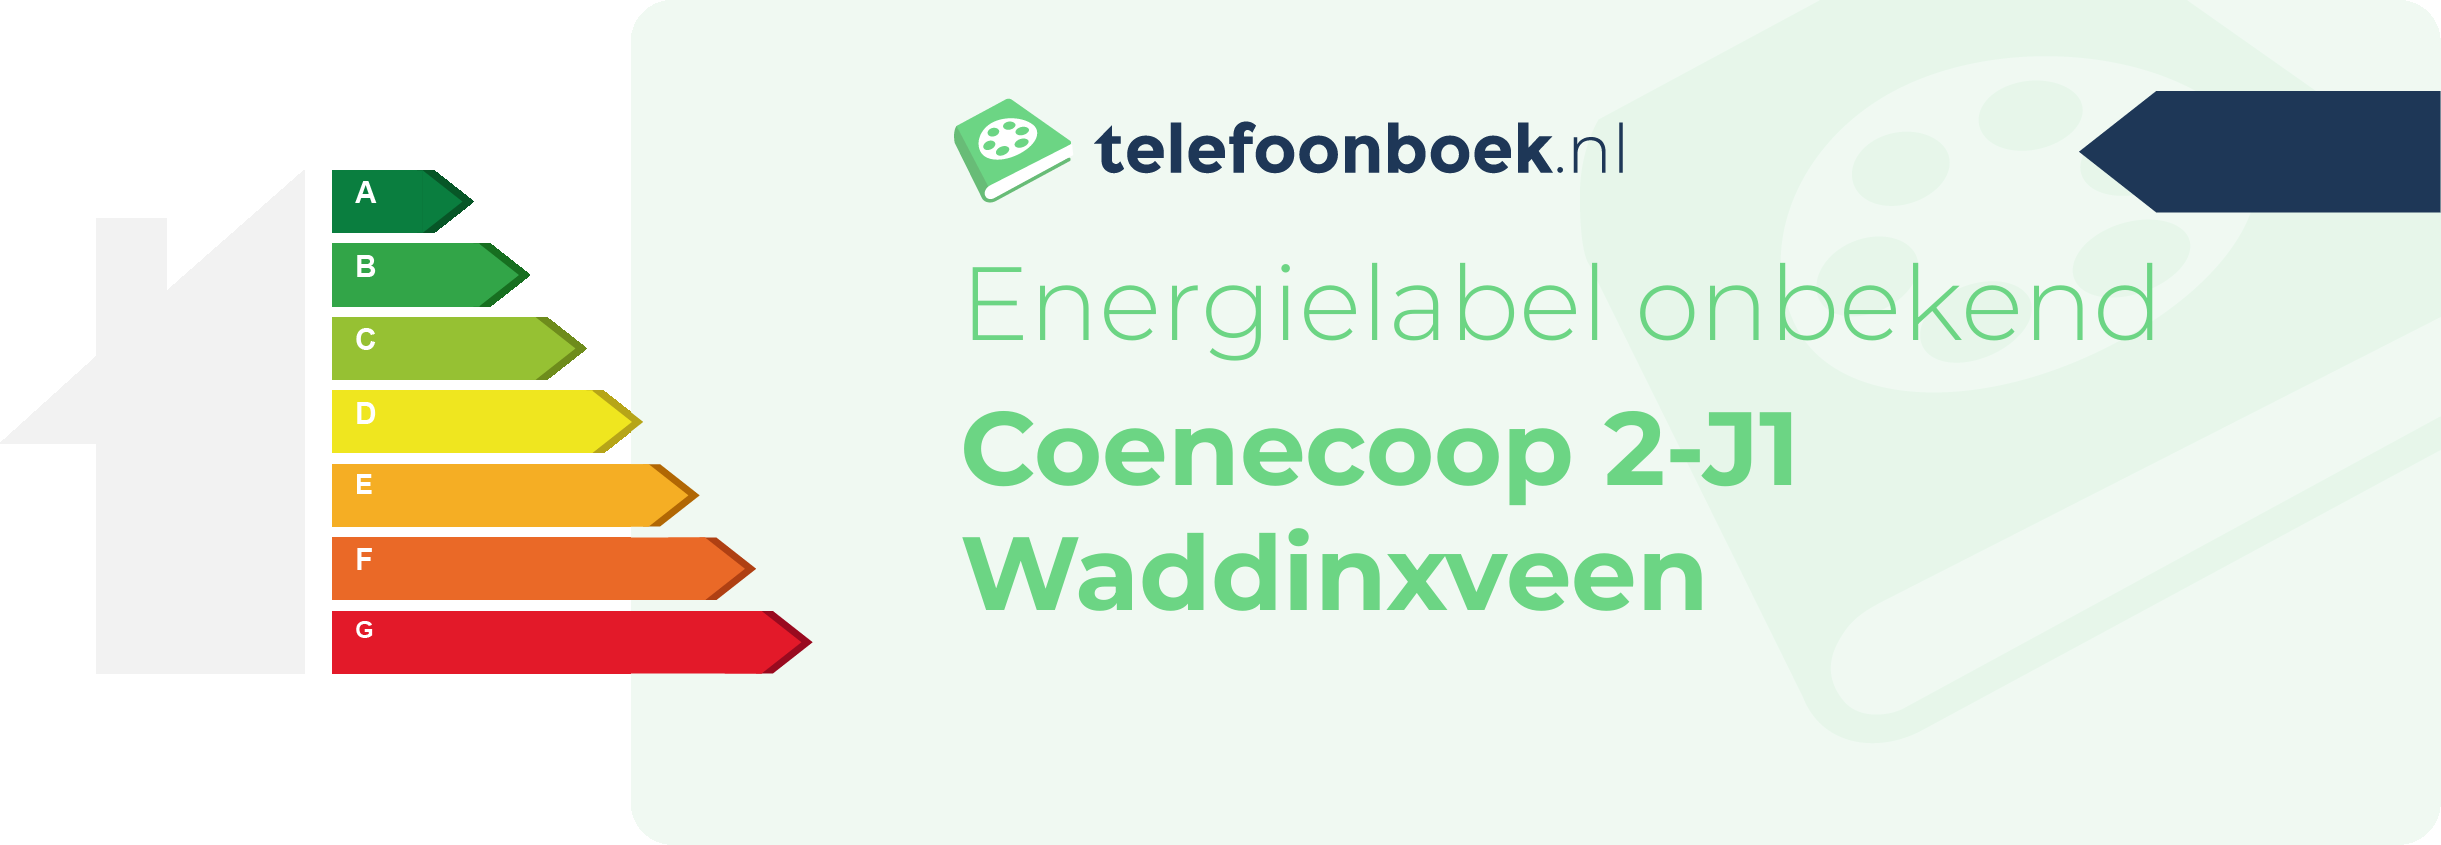 Energielabel Coenecoop 2-J1 Waddinxveen